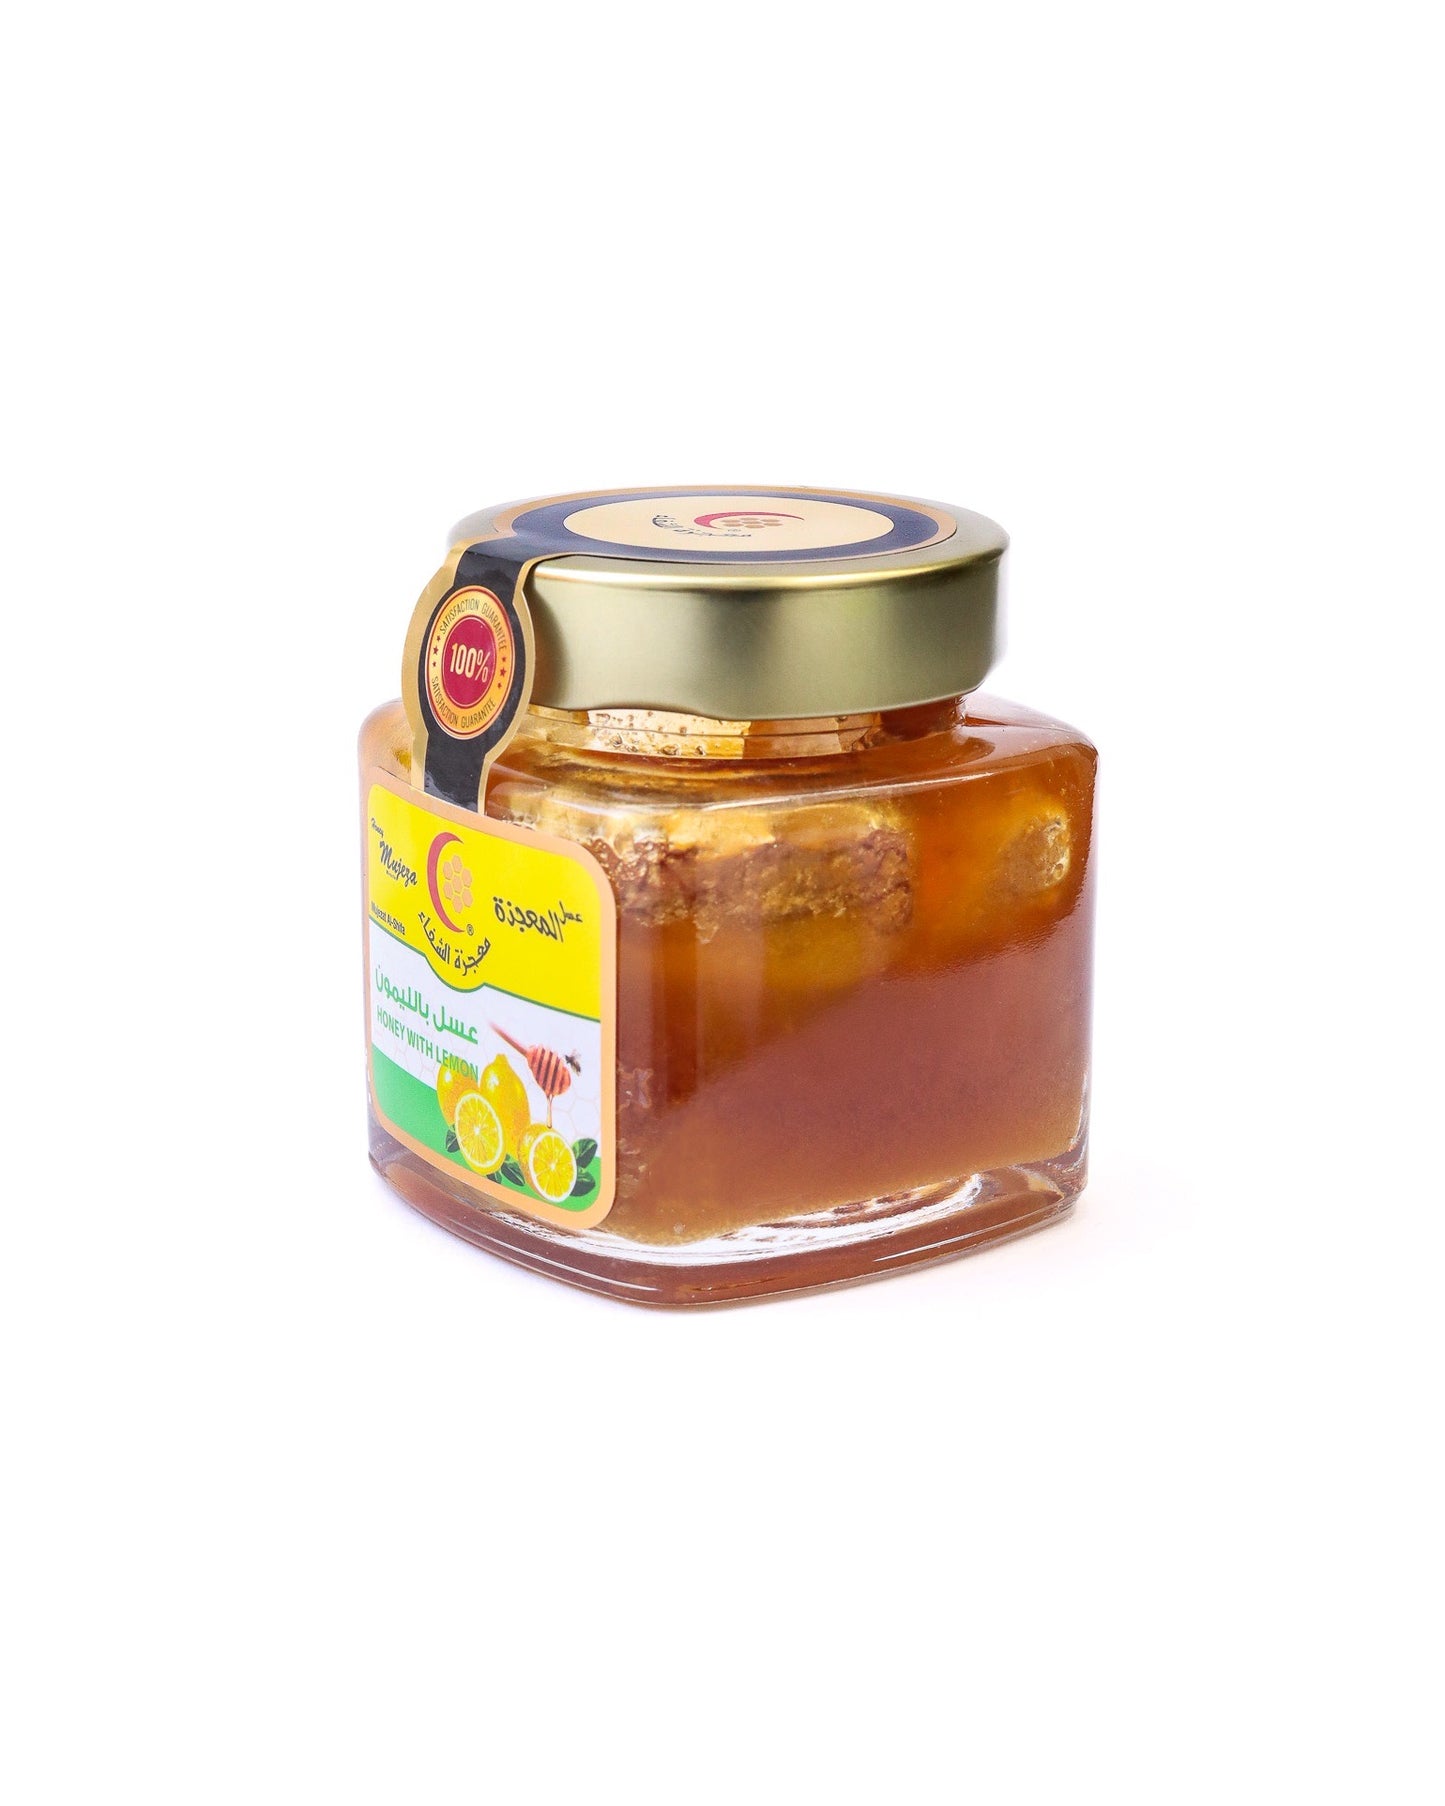 Lemon and Lemon Juice + Blackseed Honey (250g) - Mujeza Honey